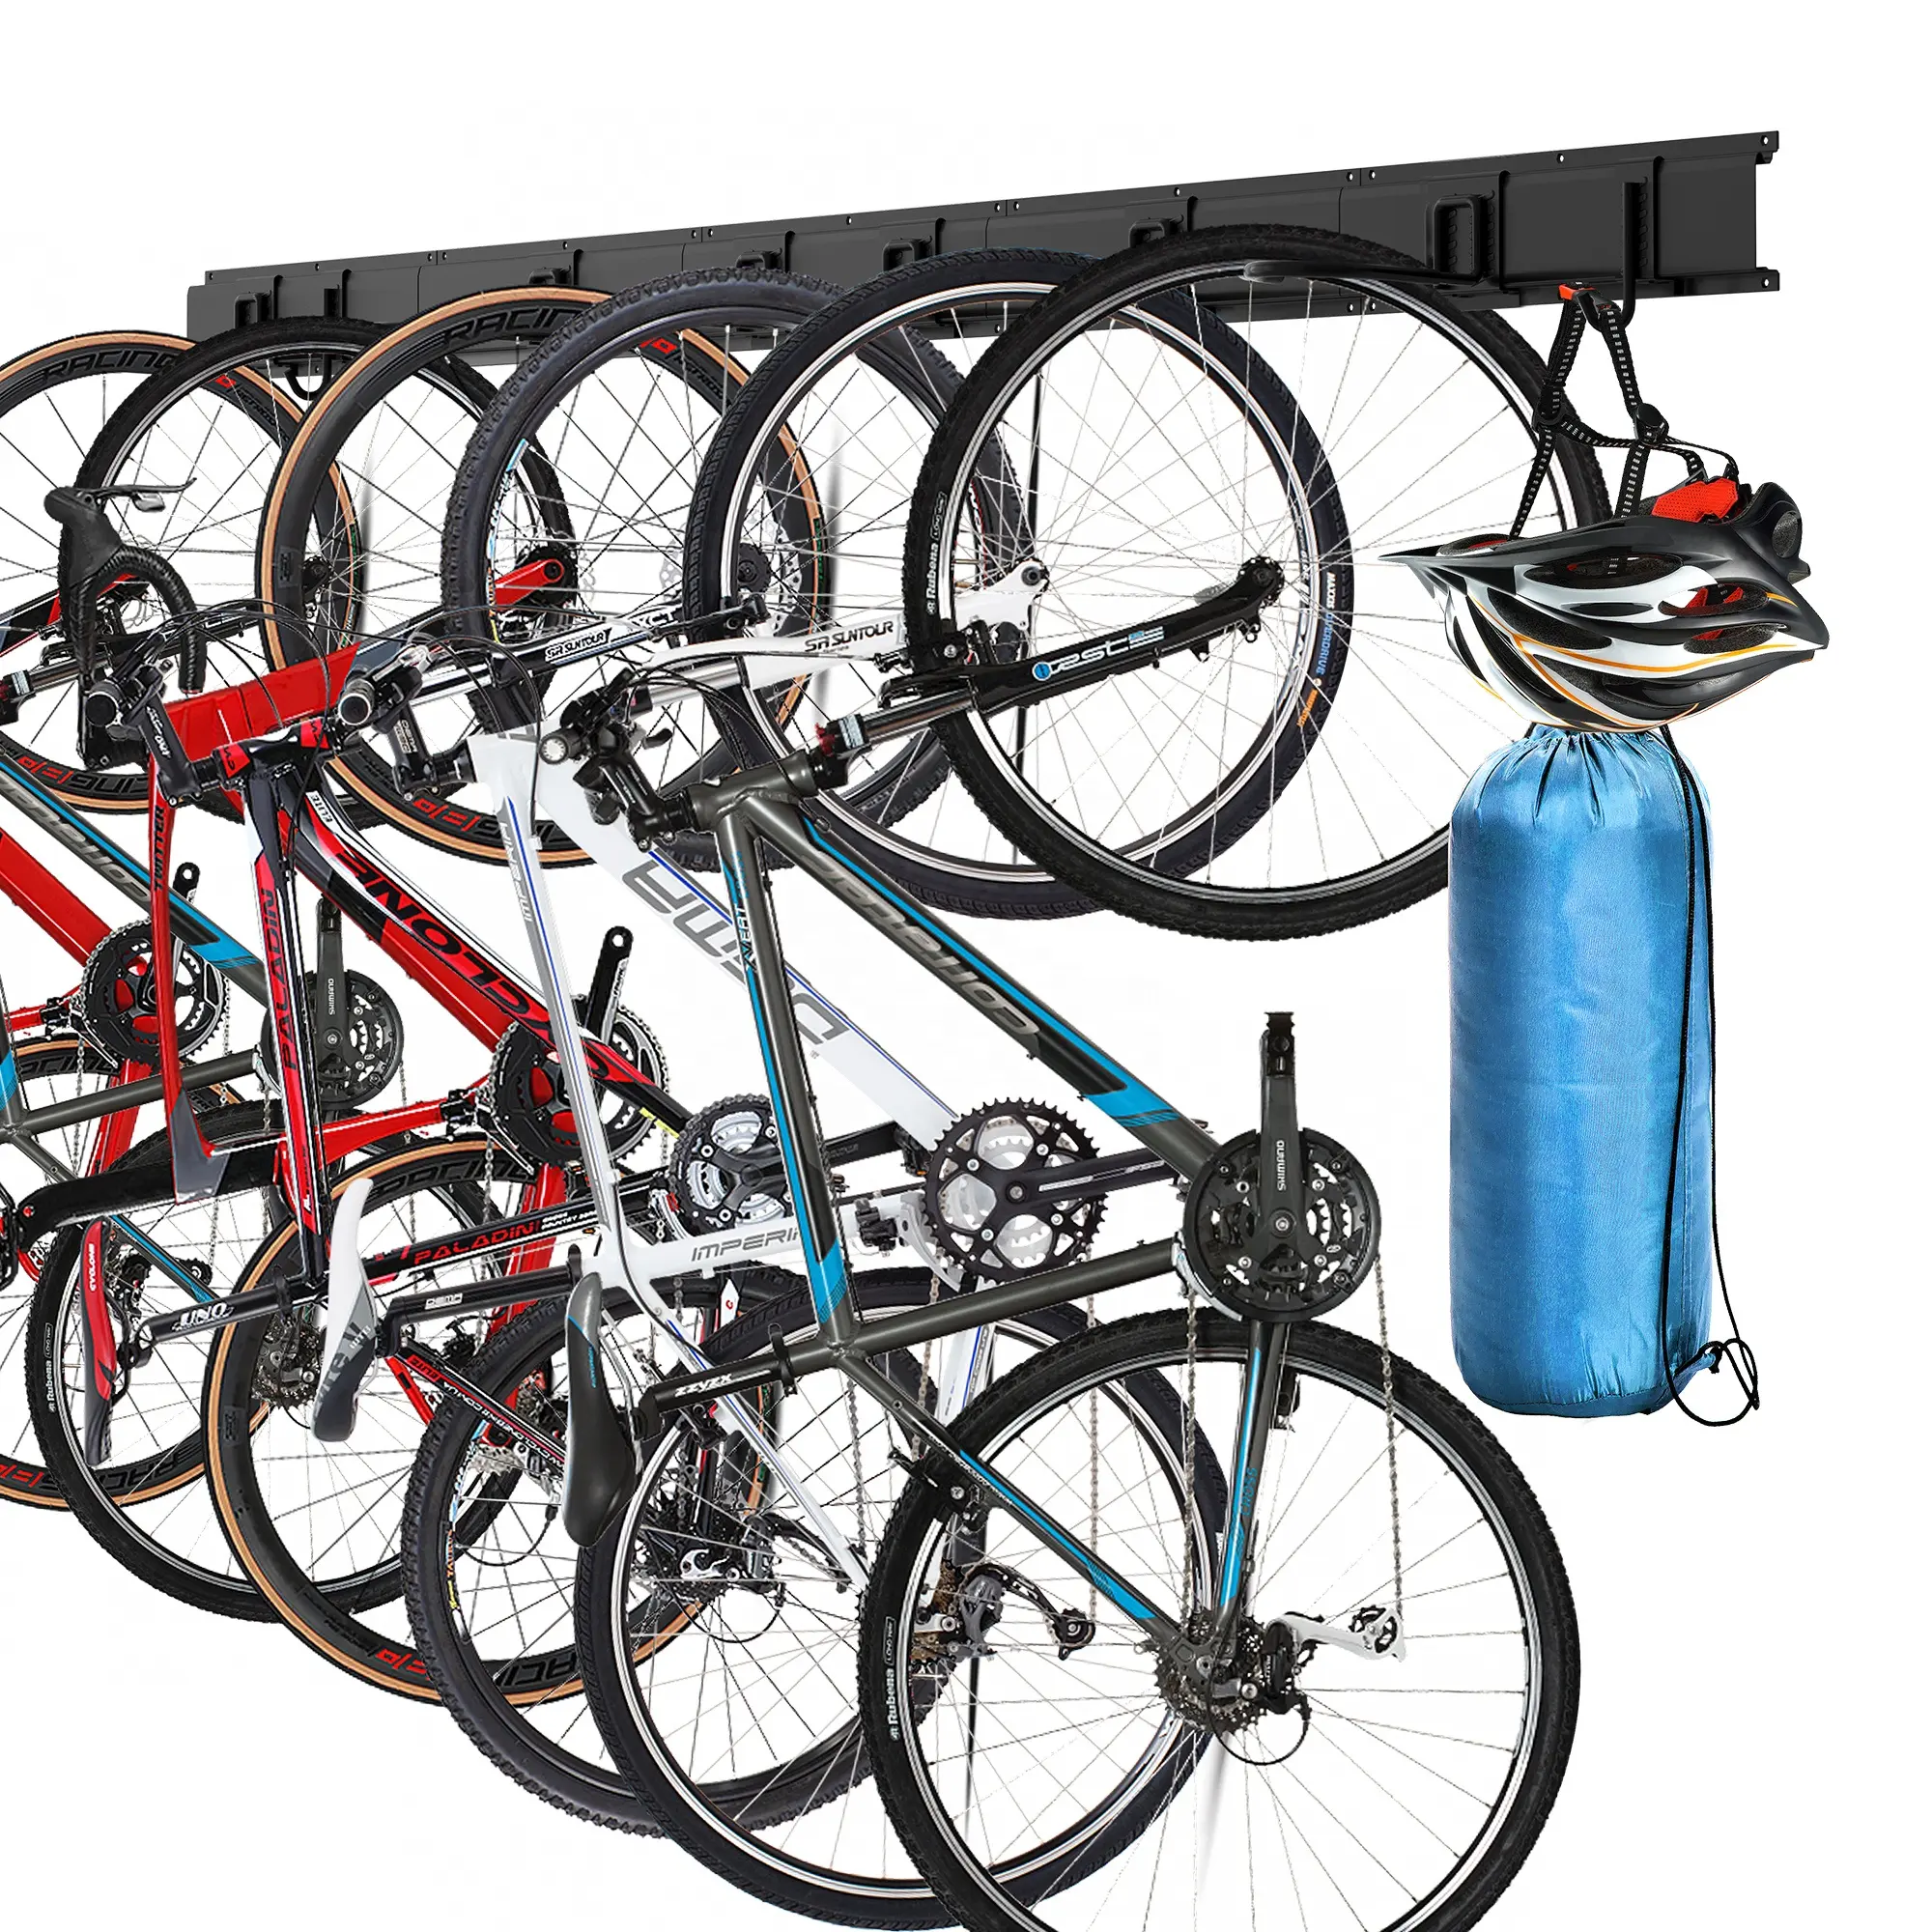 Organizador de bicicletas de GARAJE INTERIOR DE ACERO duradero, soporte de bicicleta para 6 bicicletas, colgador de montaje en pared de bicicleta de garaje, estante de almacenamiento de bicicletas